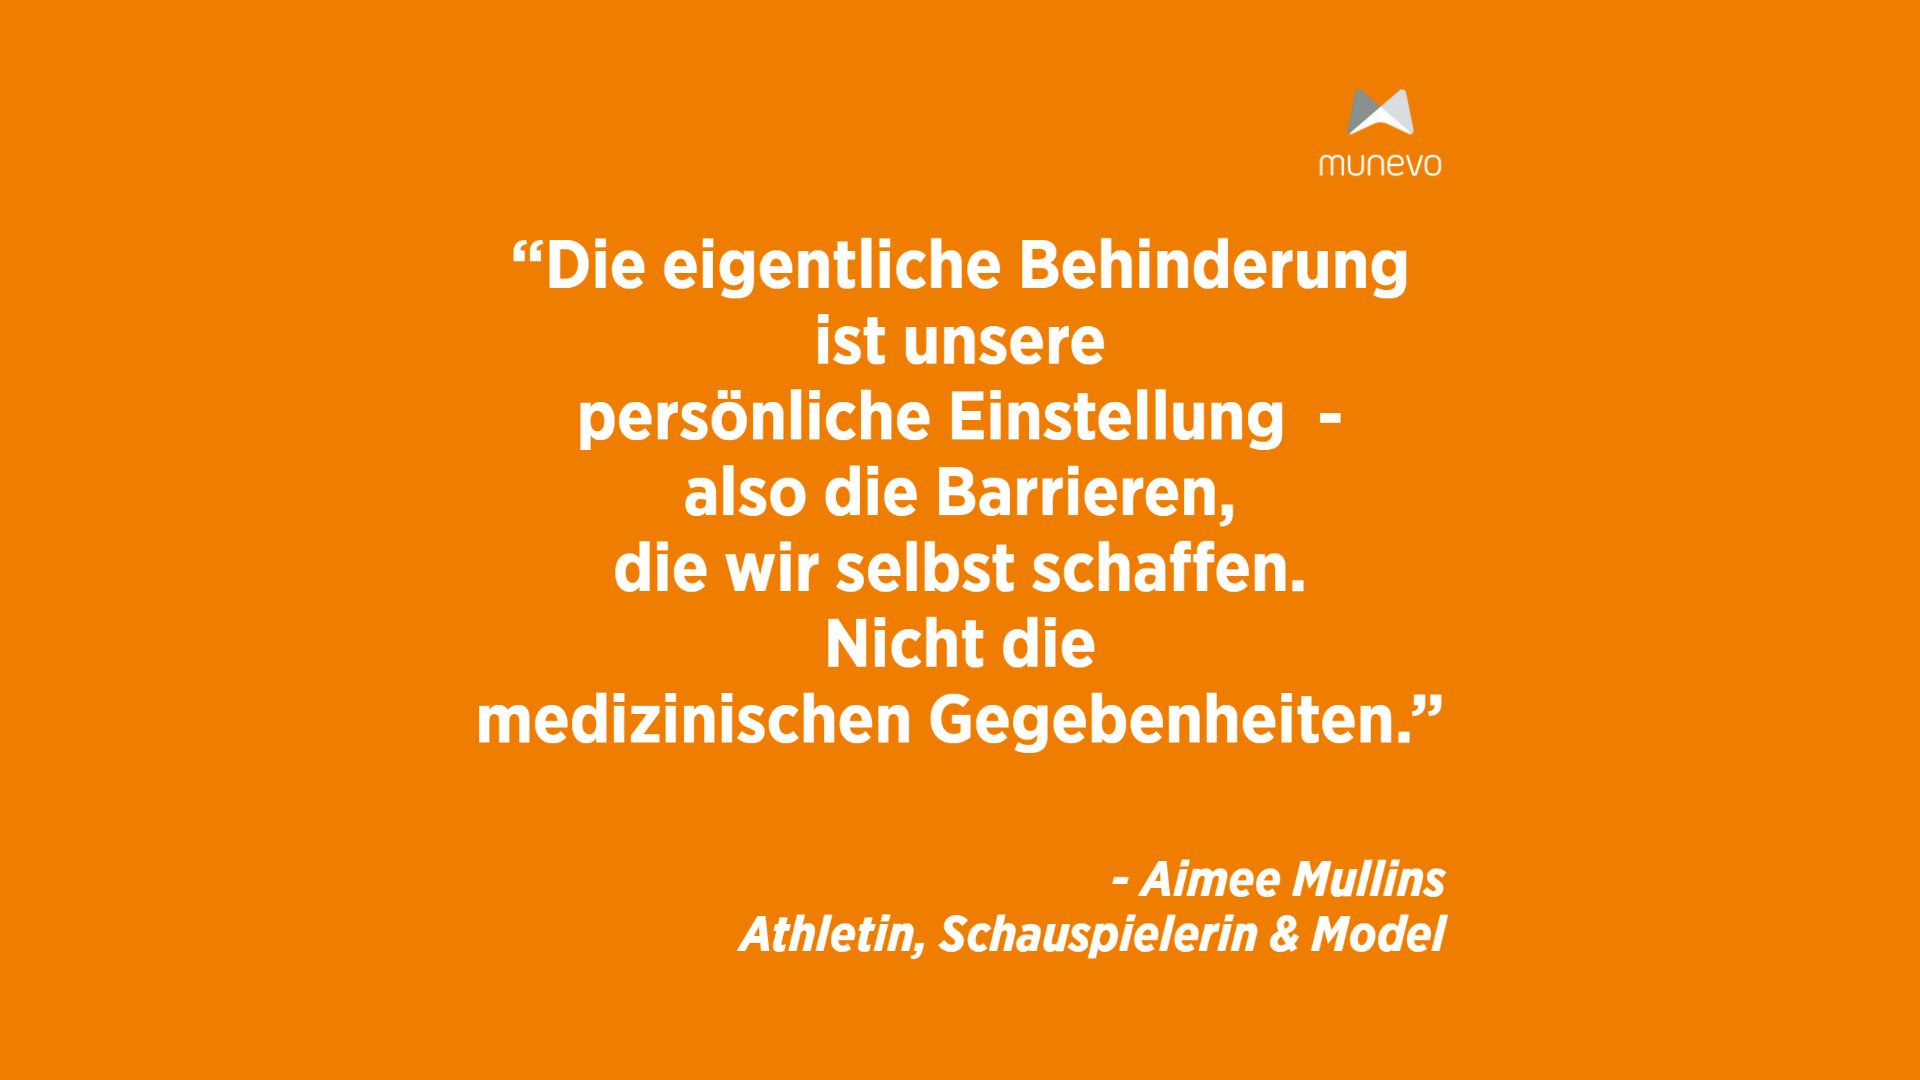 "Die eigentliche Behinderung ist unsere persönliche Einstellung - also die Barrieren, die wir selbst schaffen. Nicht die medizinischen Gegebenheiten." - Aimee Mullins Athletin, Schauspielerin & Model